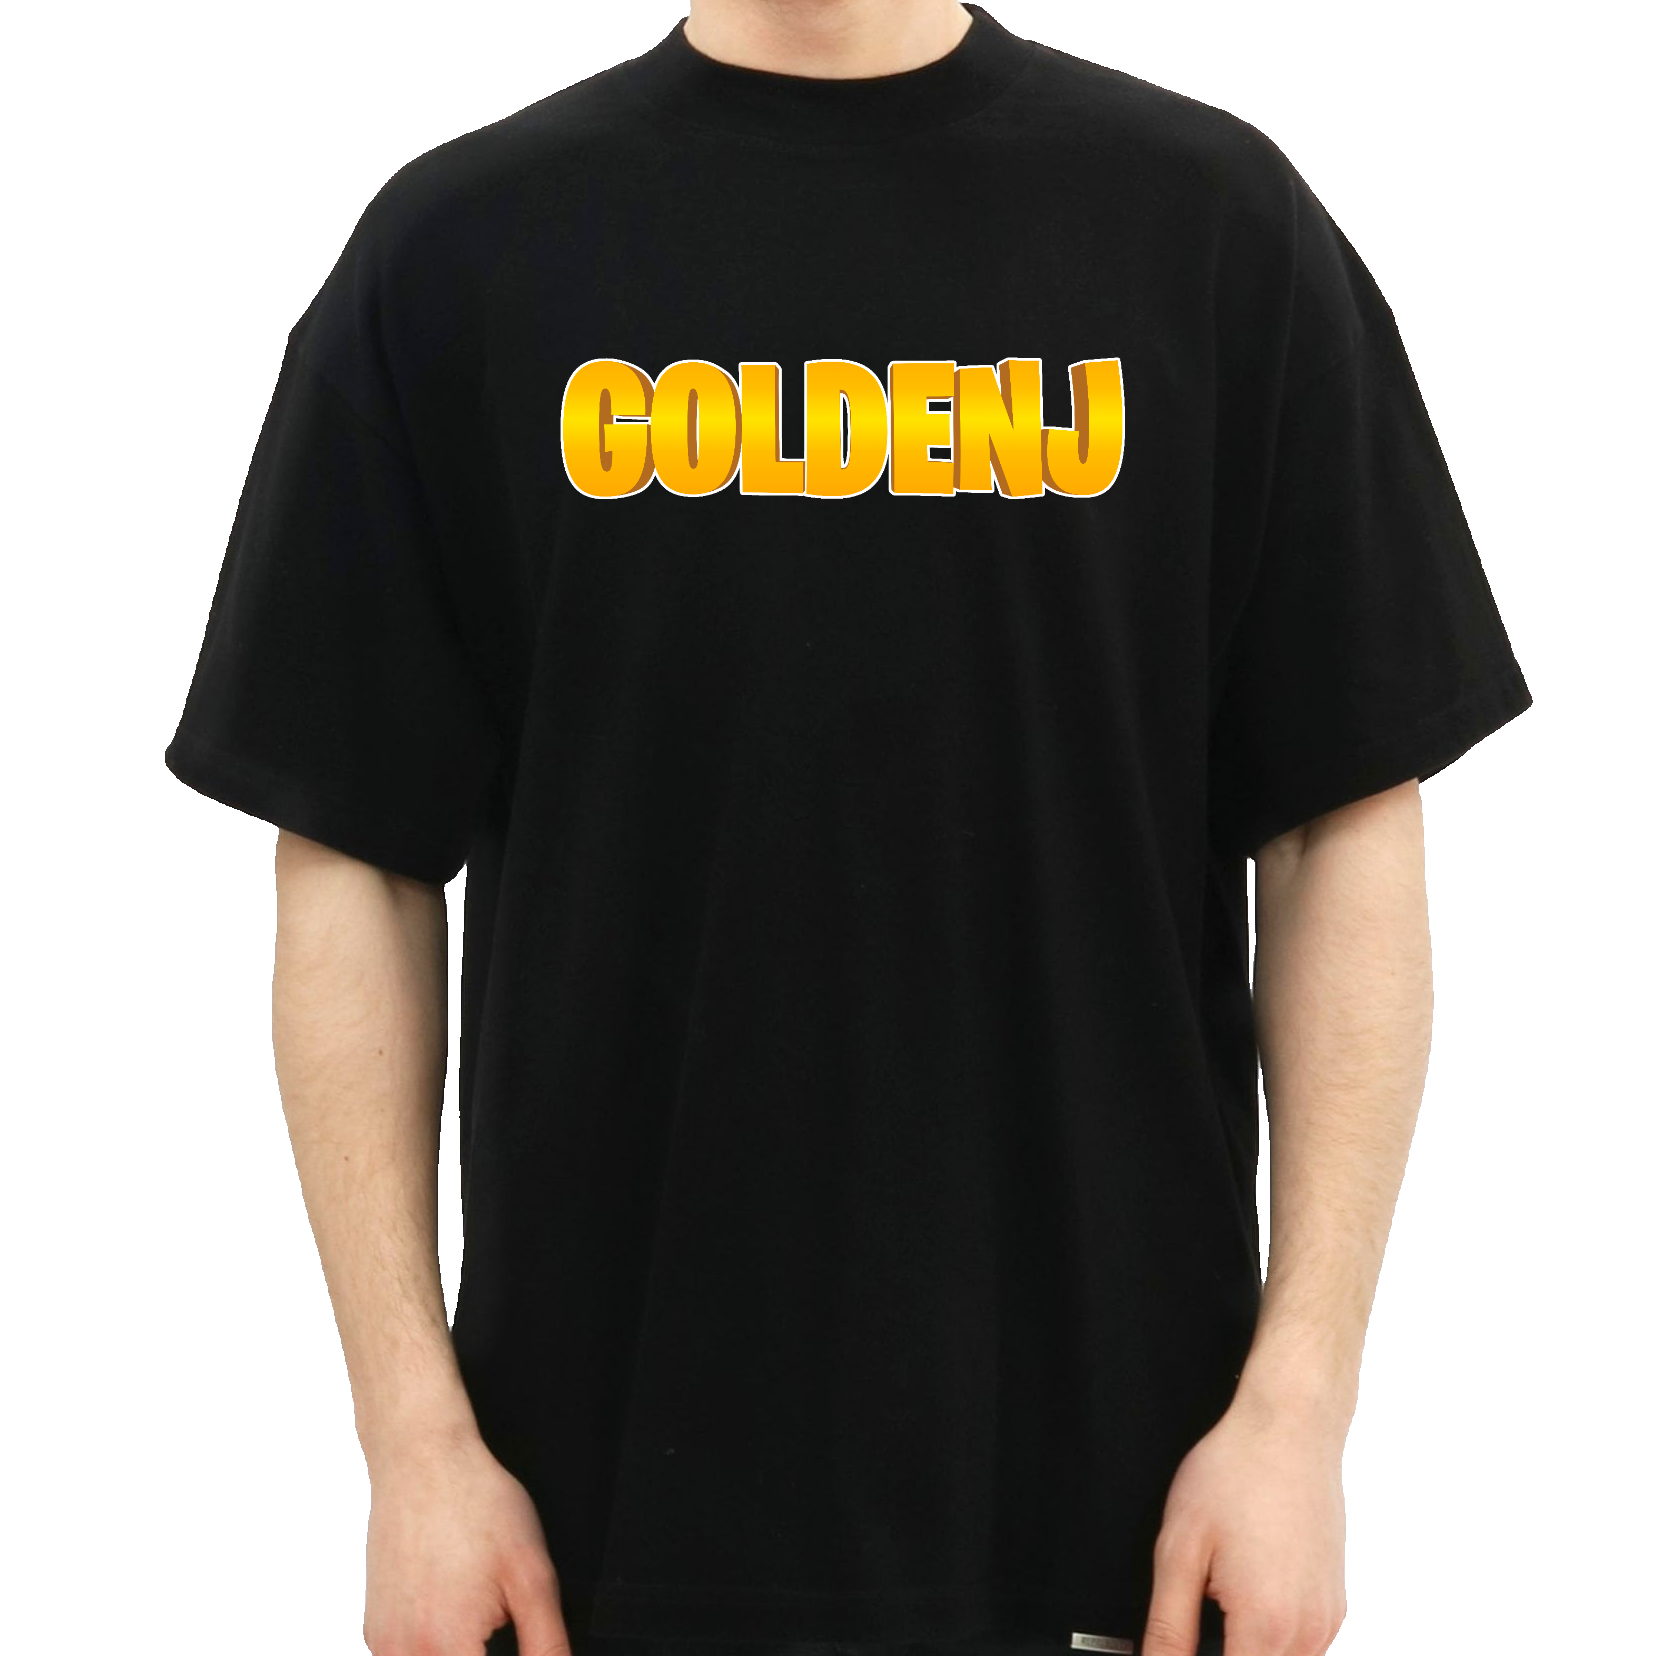 goldenj t-shirt merchandise hos geekd